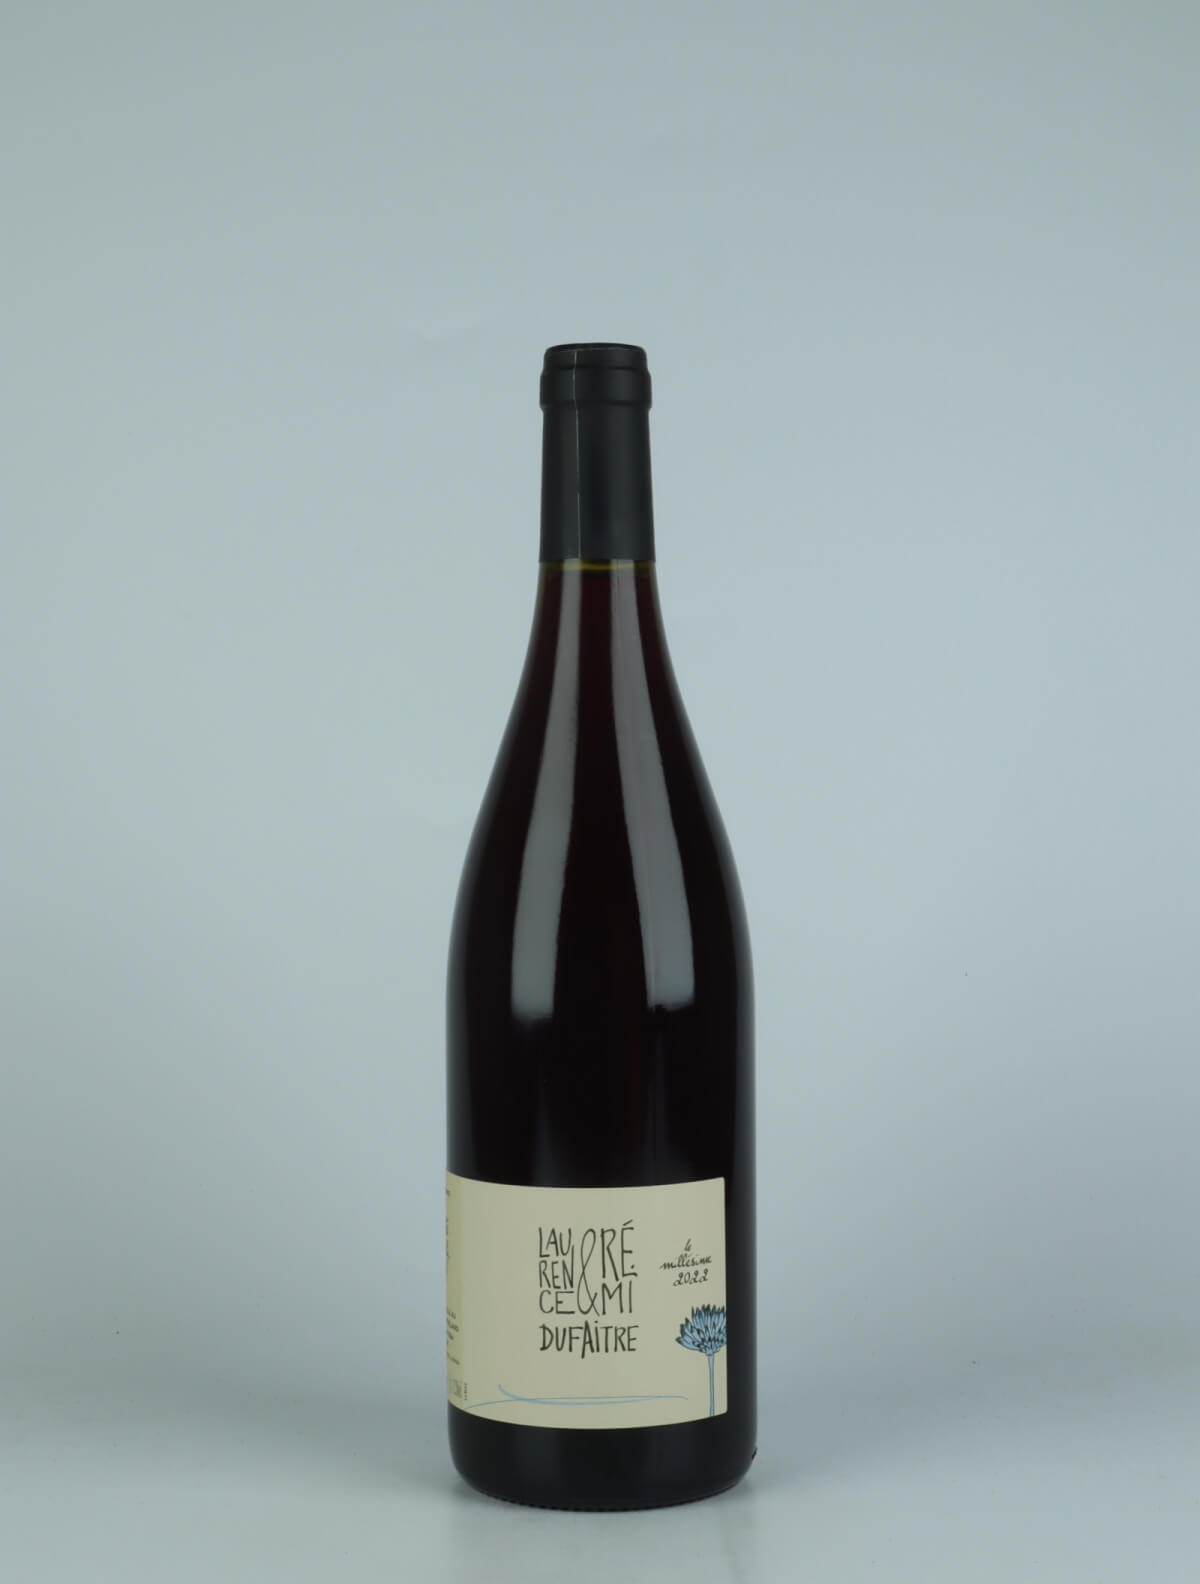 En flaske 2022 Côte de Brouilly Rødvin fra Laurence & Rémi Dufaitre, Beaujolais i Frankrig